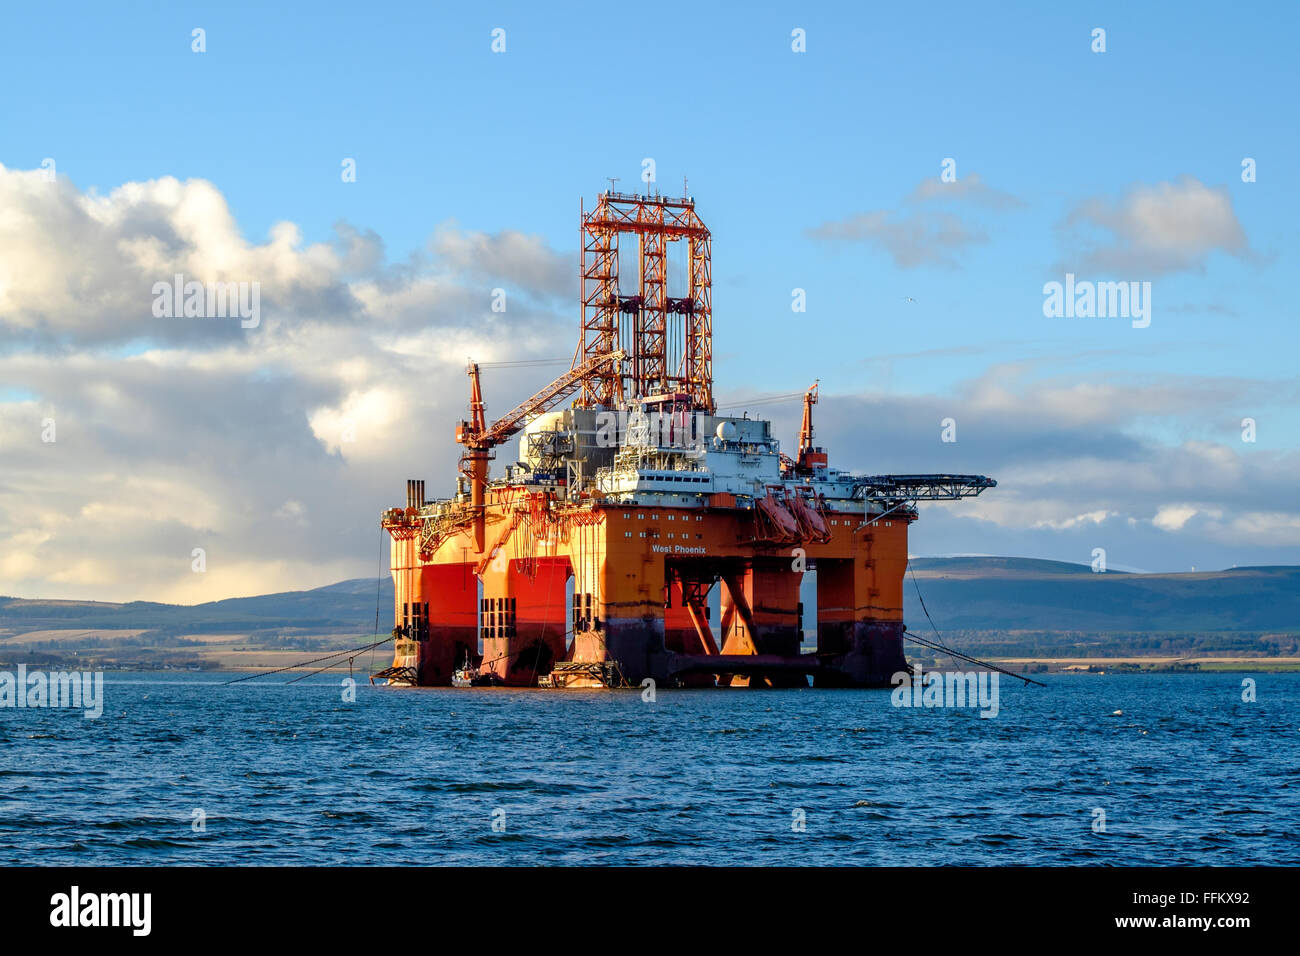 Le dirigeant d'une plate-forme pétrolière flotte dans l'Estuaire de Cromarty dans les montagnes de l'Ecosse lors d'une journée ensoleillée. Banque D'Images